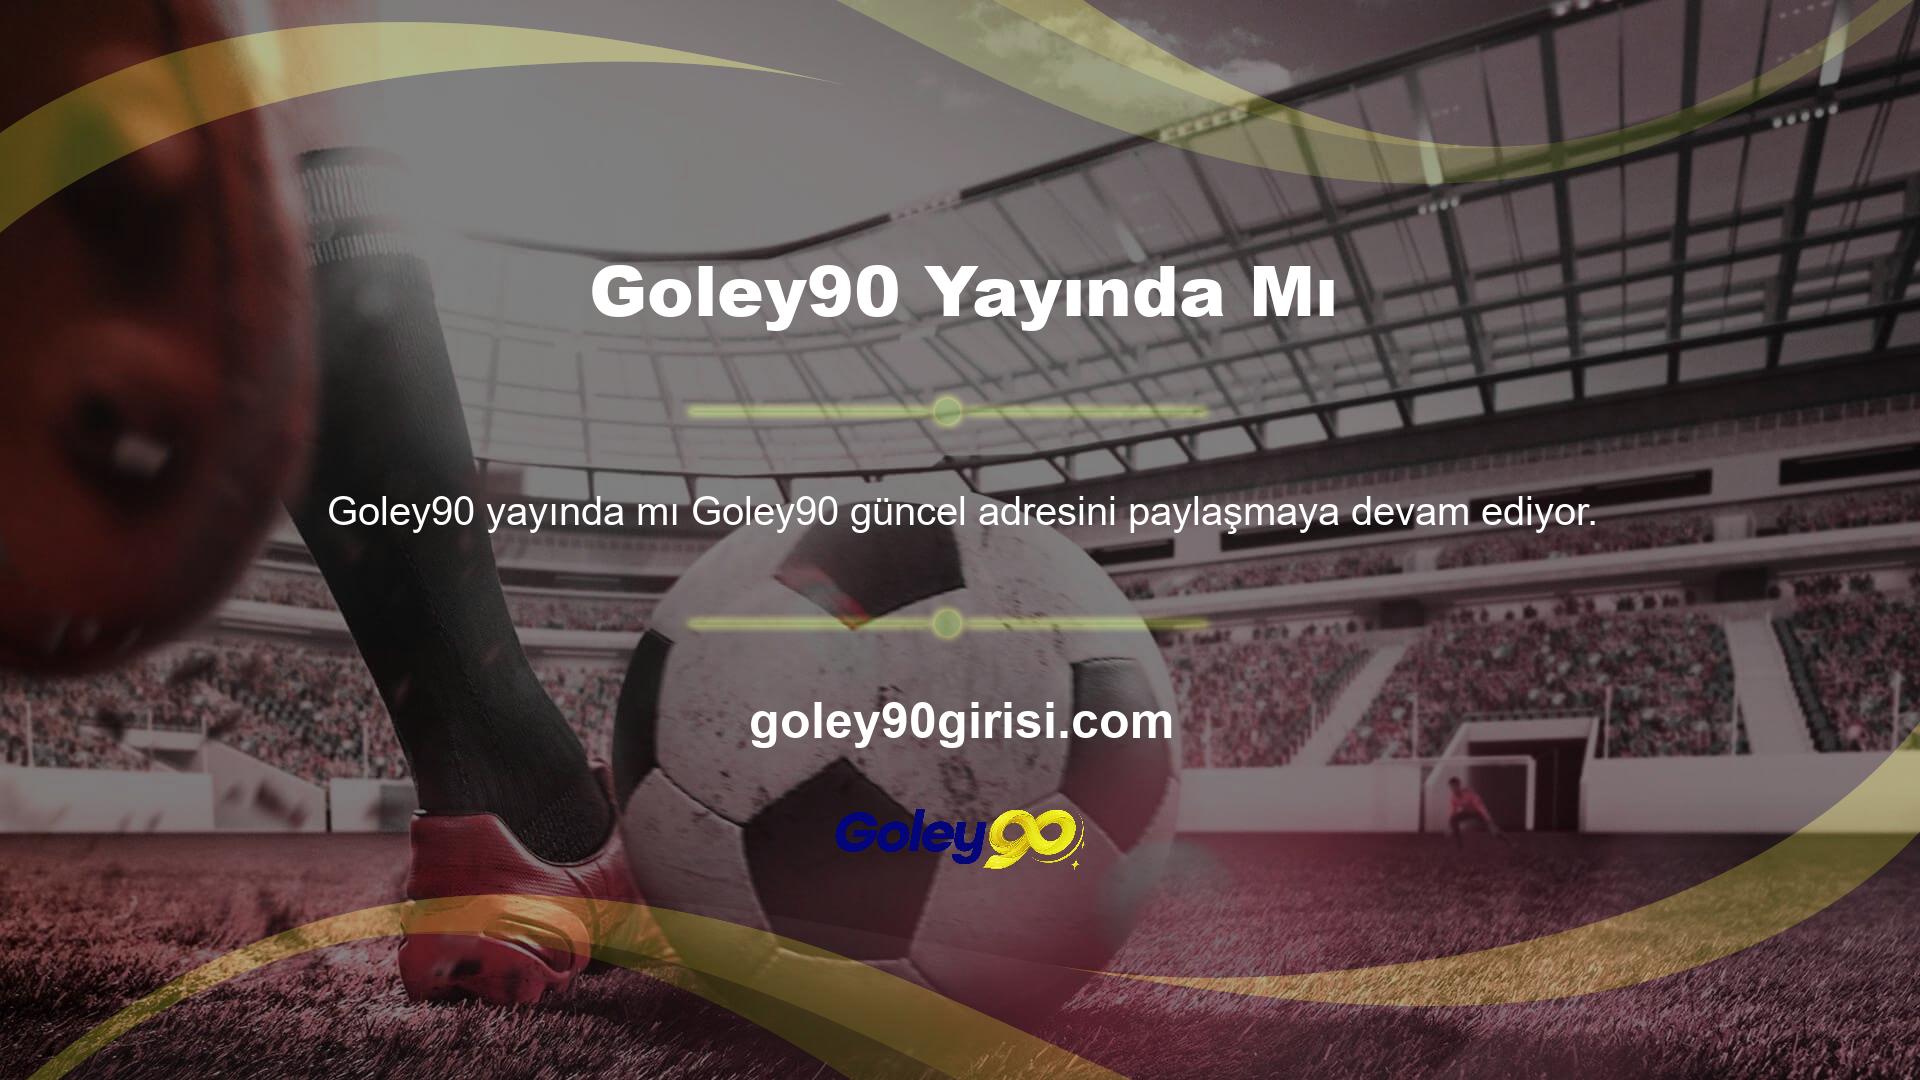 Goley90, Türkiye’nin lider casino ve bahis sitesi ve köklü bir premium bahis sitesidir